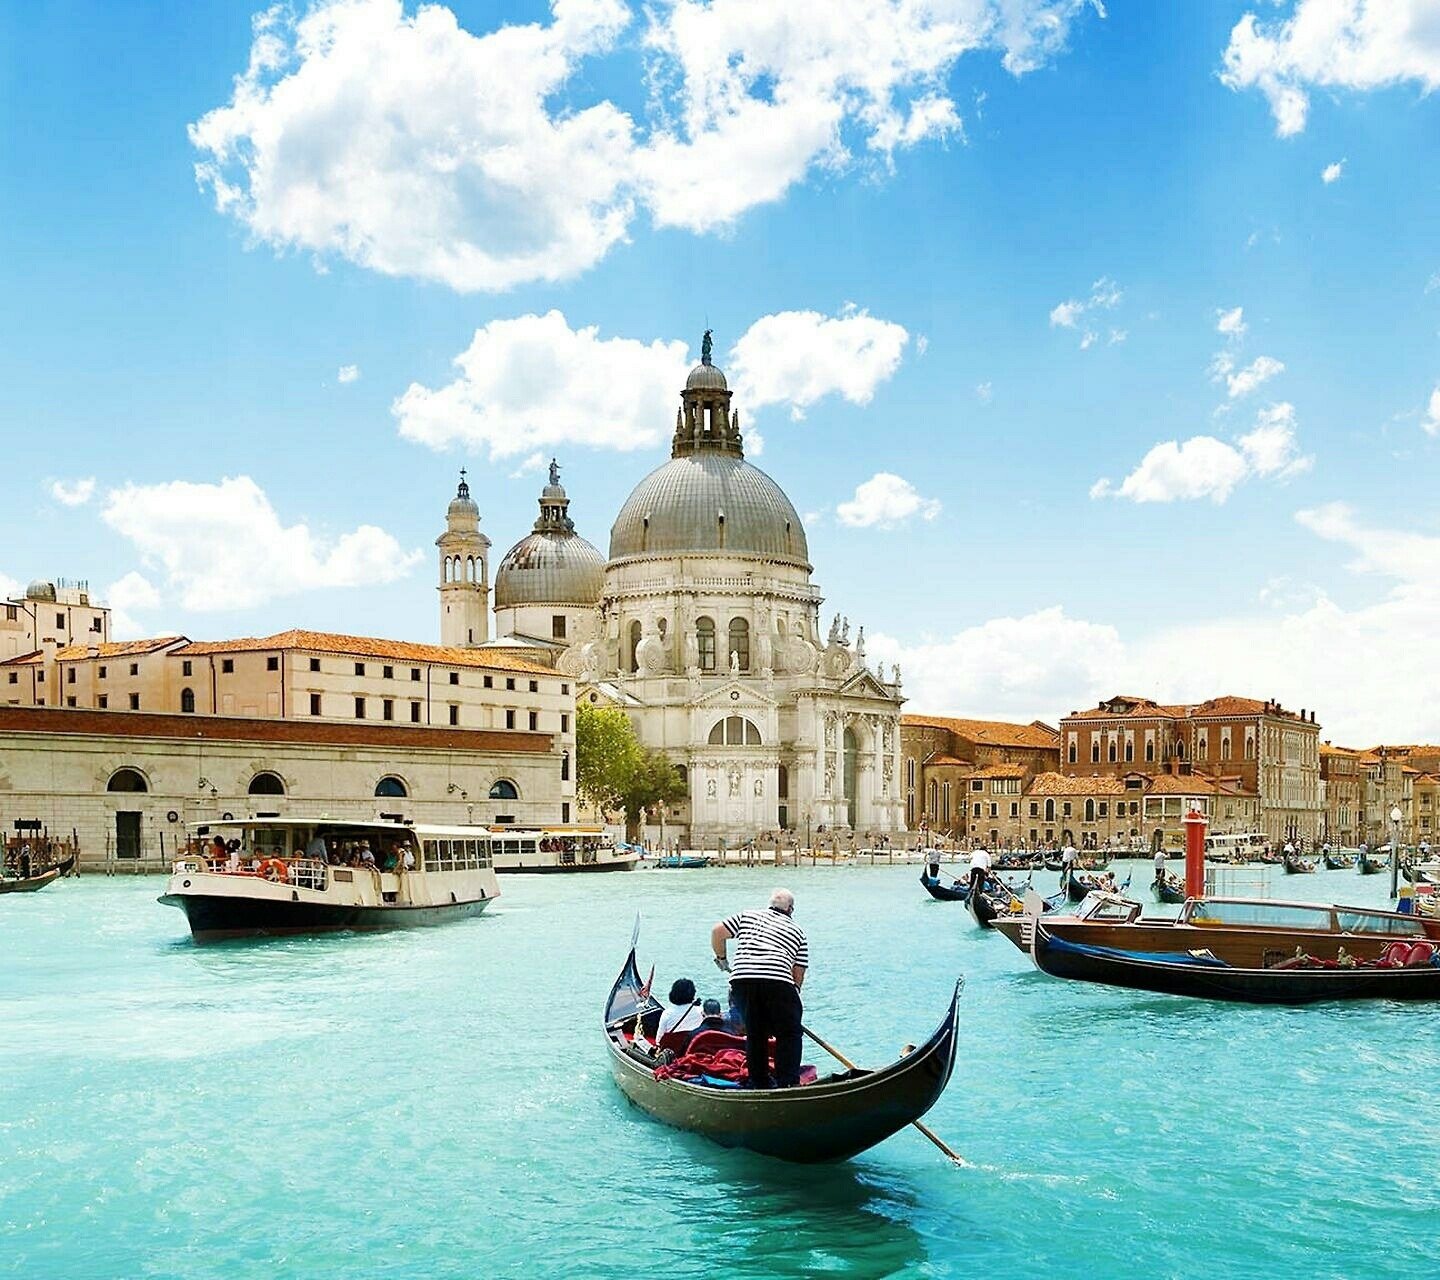 Gondolas in a Venetian canal